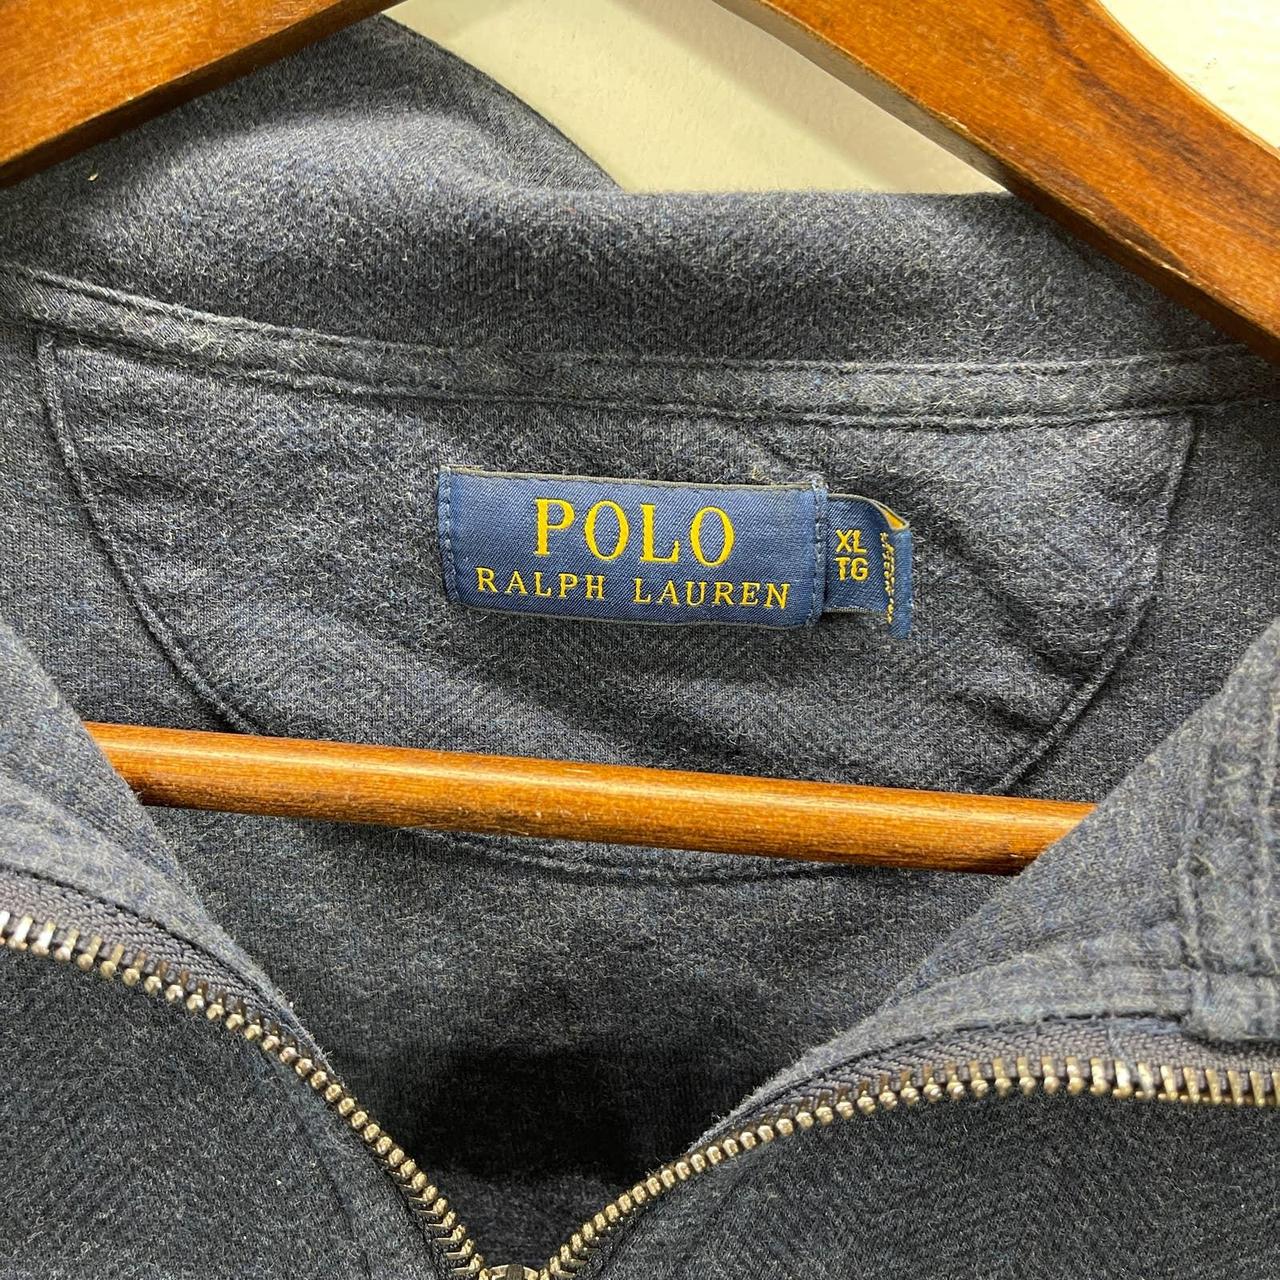 Polo Ralph Lauren 1/4 Zip Pullover Sweatshirt Adult... - Depop